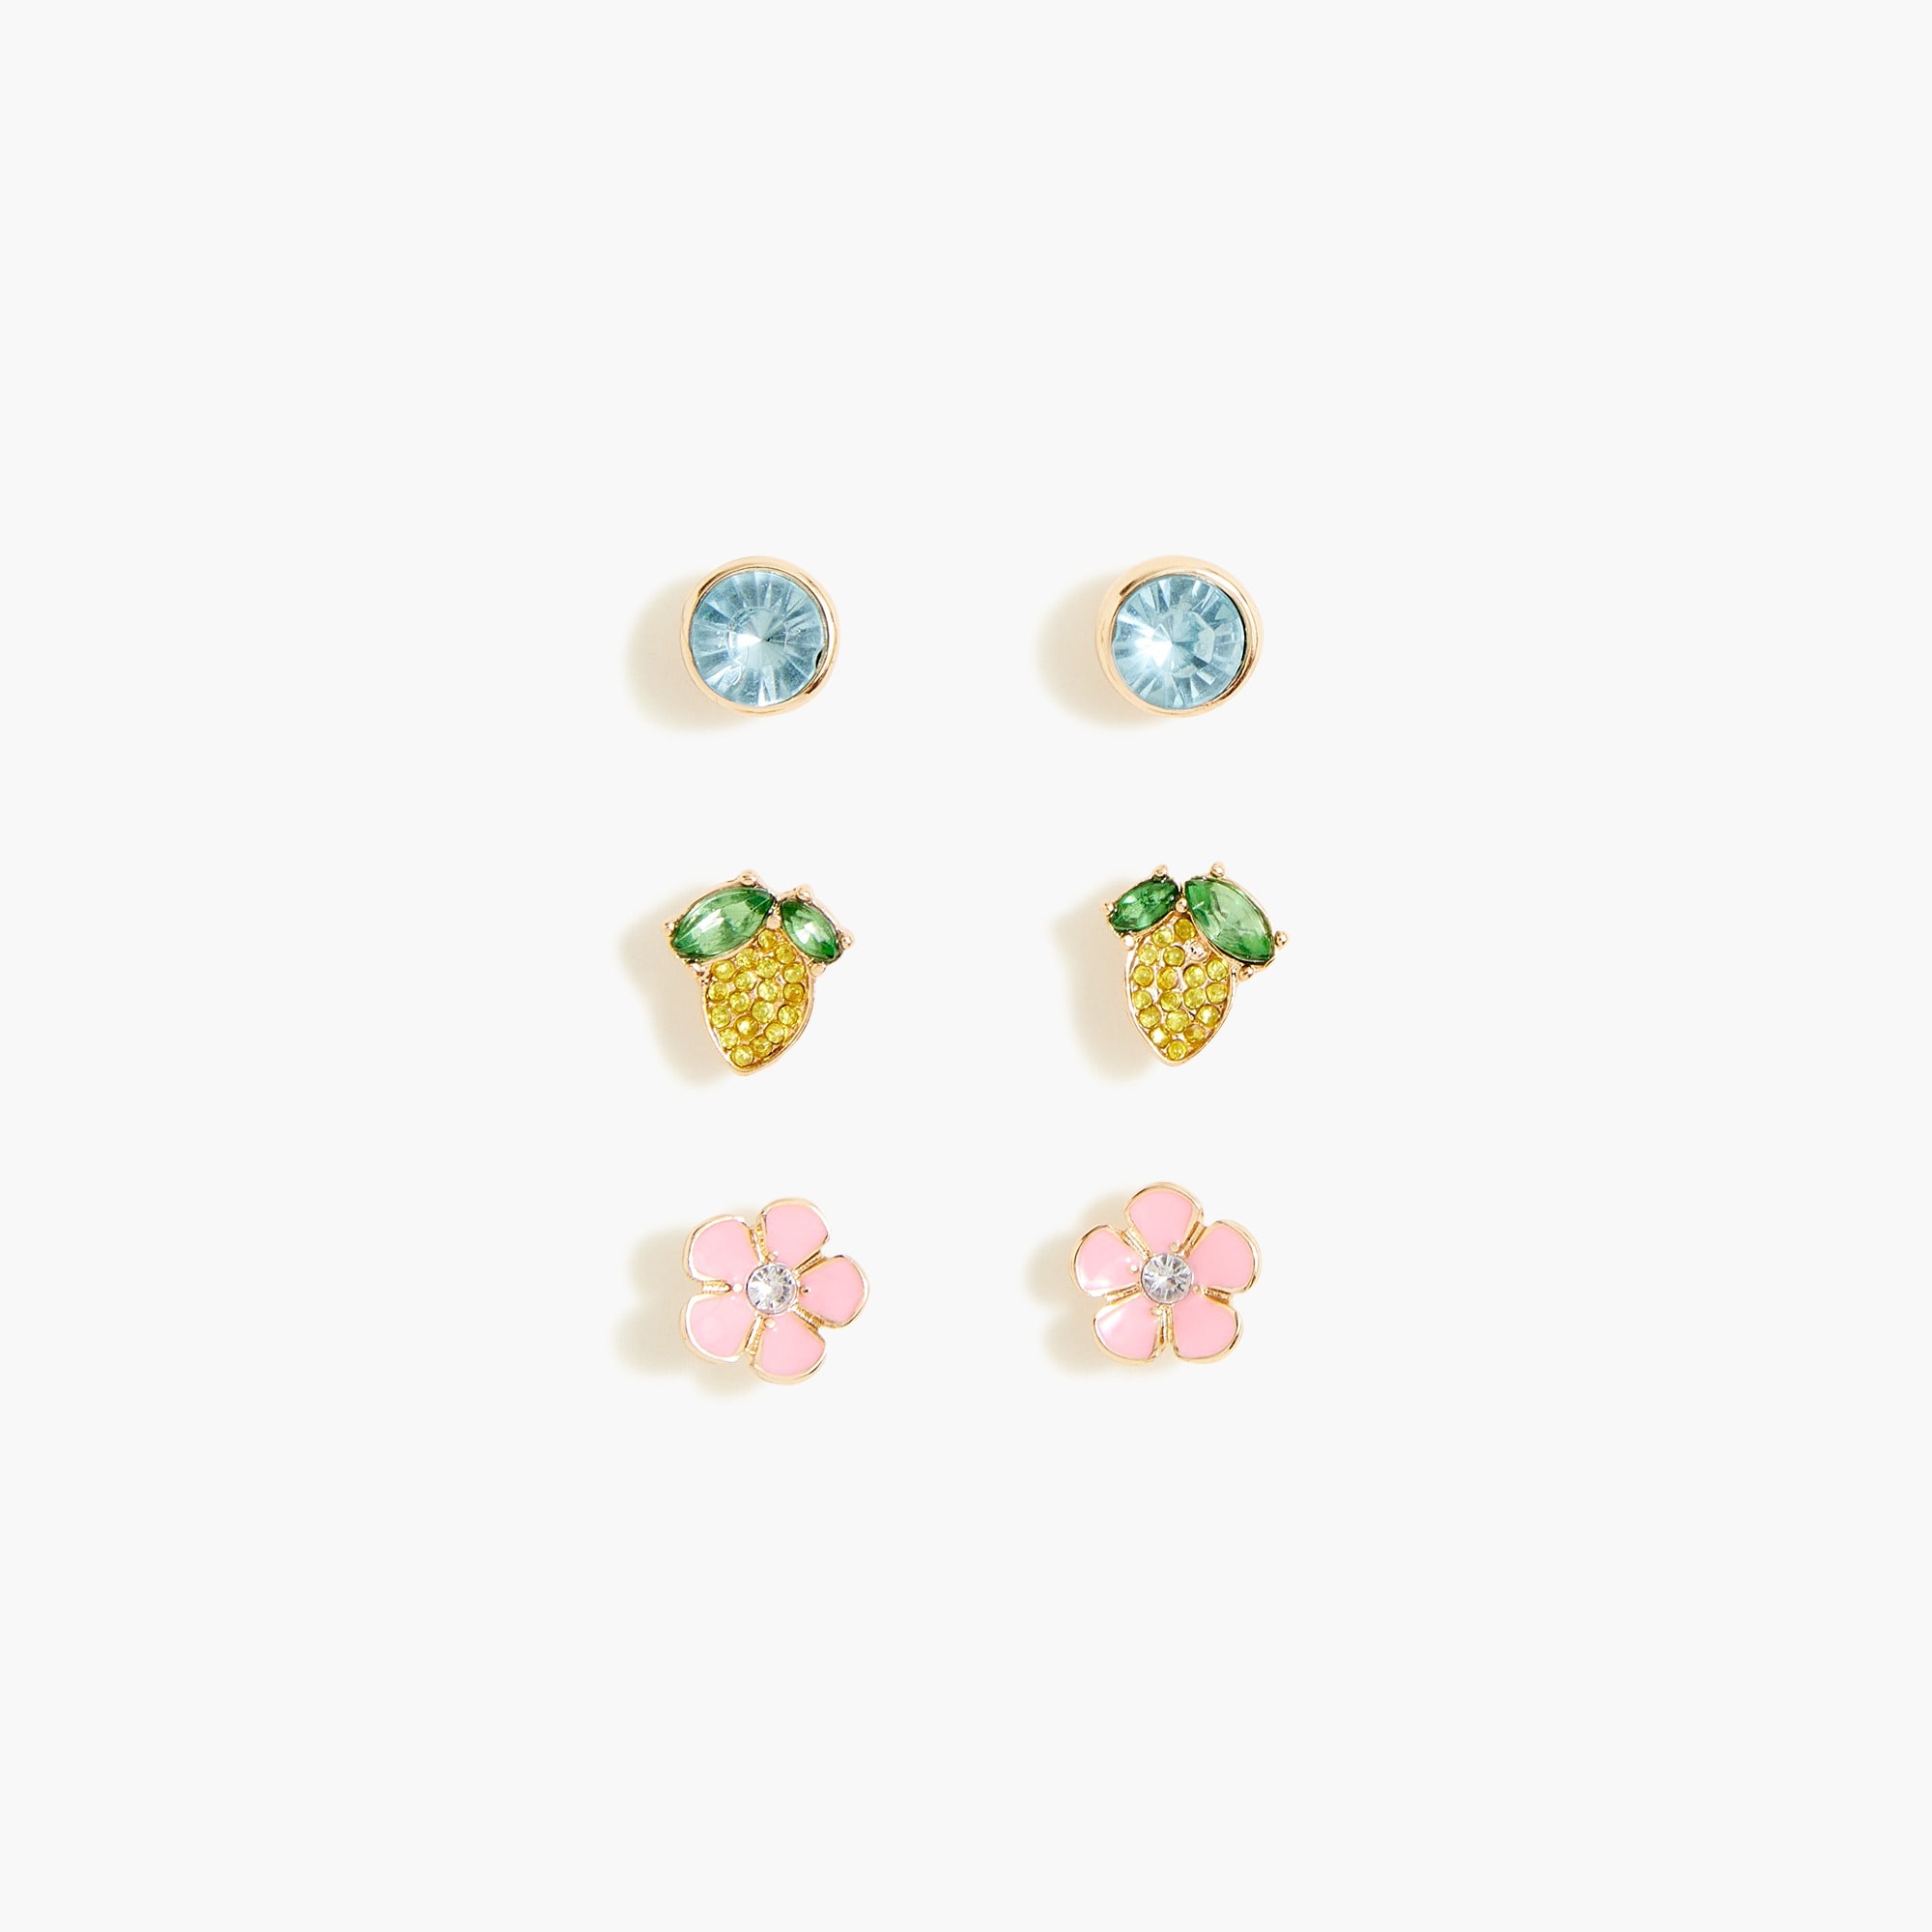  Girls' lemon earrings set-of-three